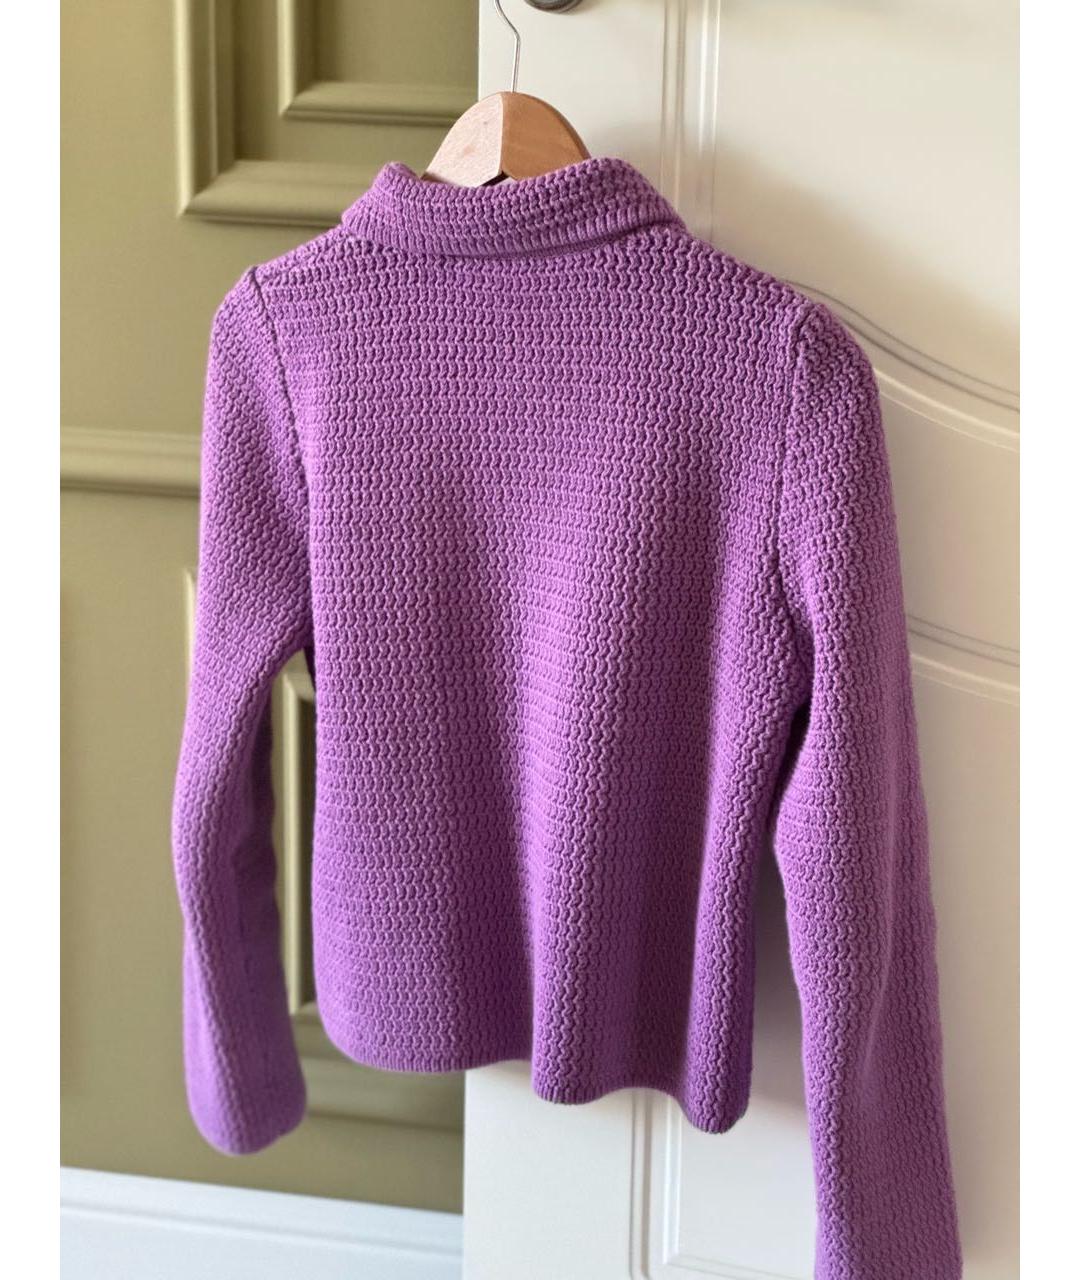 12 STOREEZ Фиолетовый хлопковый жакет/пиджак, фото 2